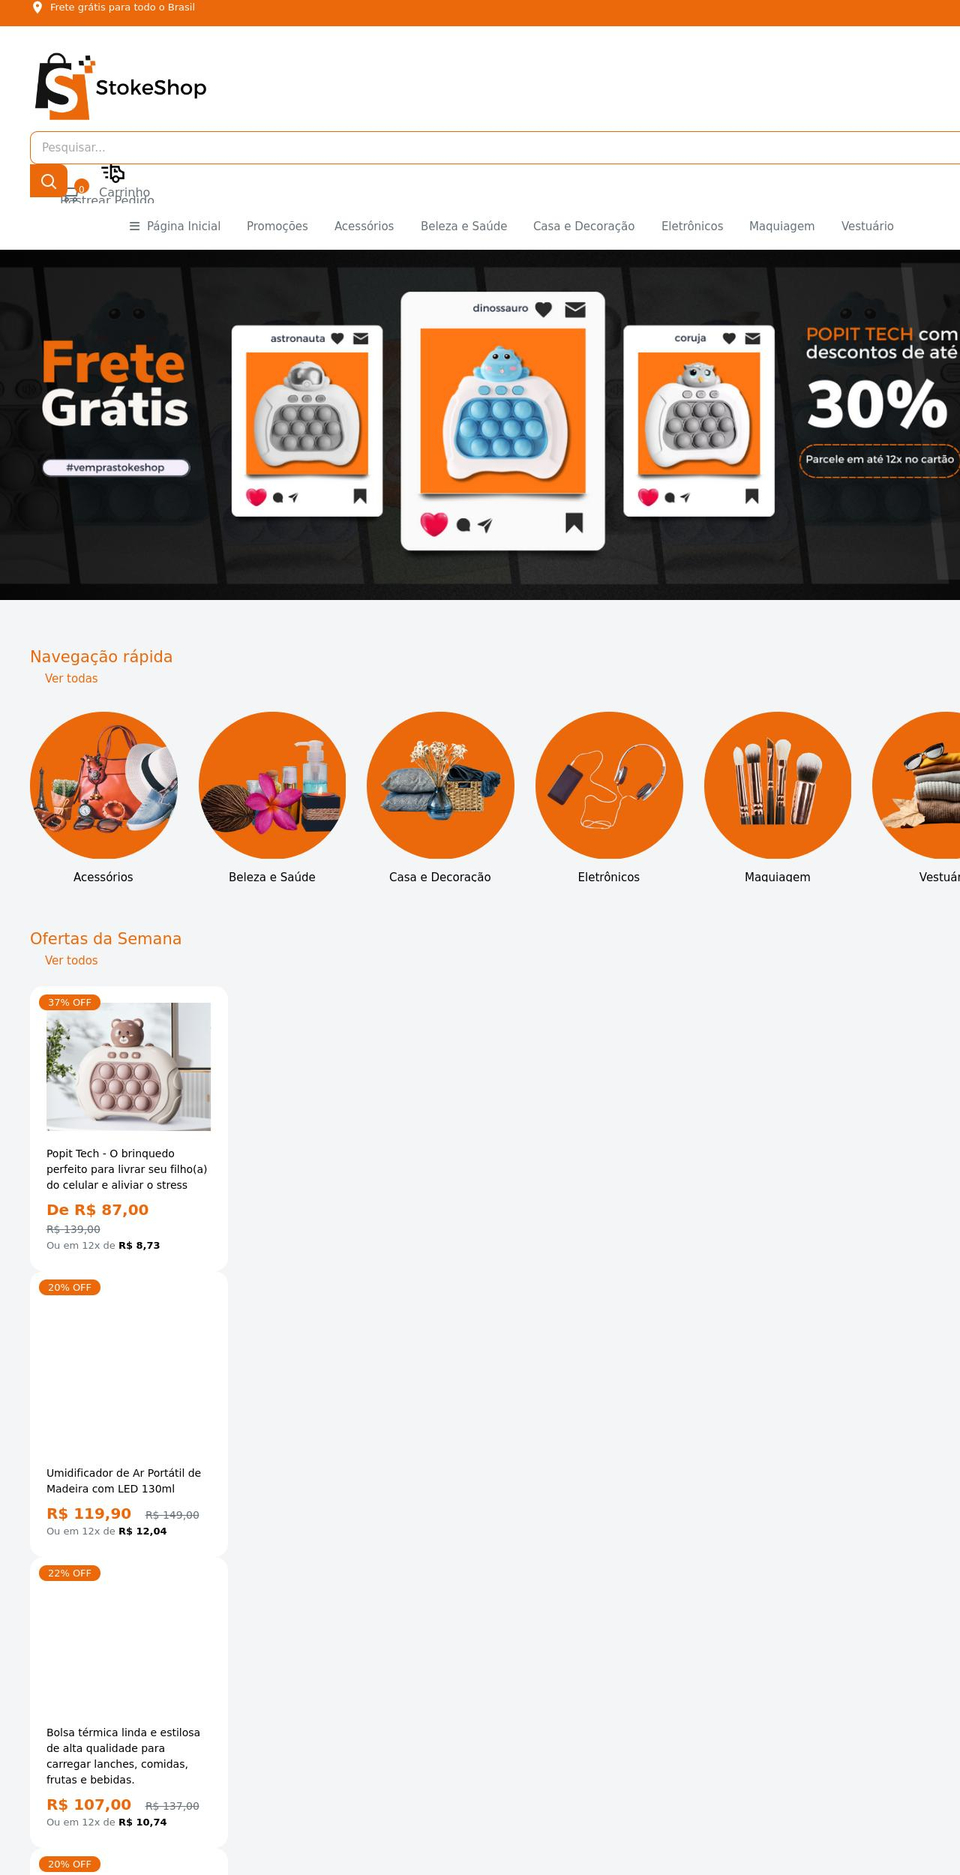 stokeshop.com.br shopify website screenshot